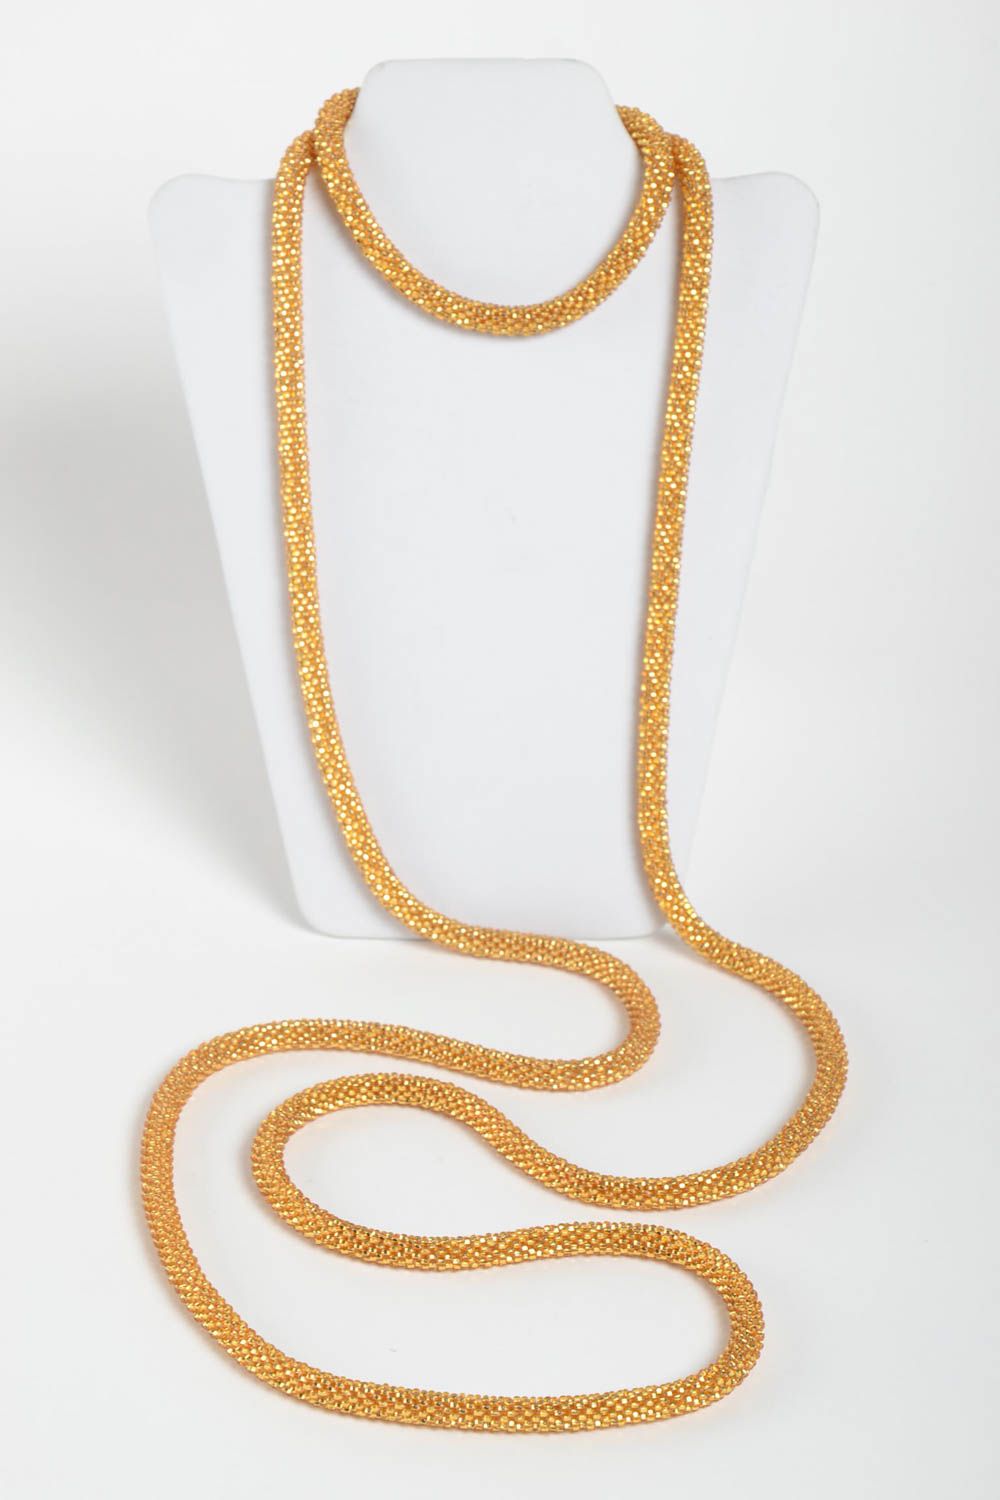 Collier spirale doré long Bijou fait main original magnifique Cadeau femme photo 3